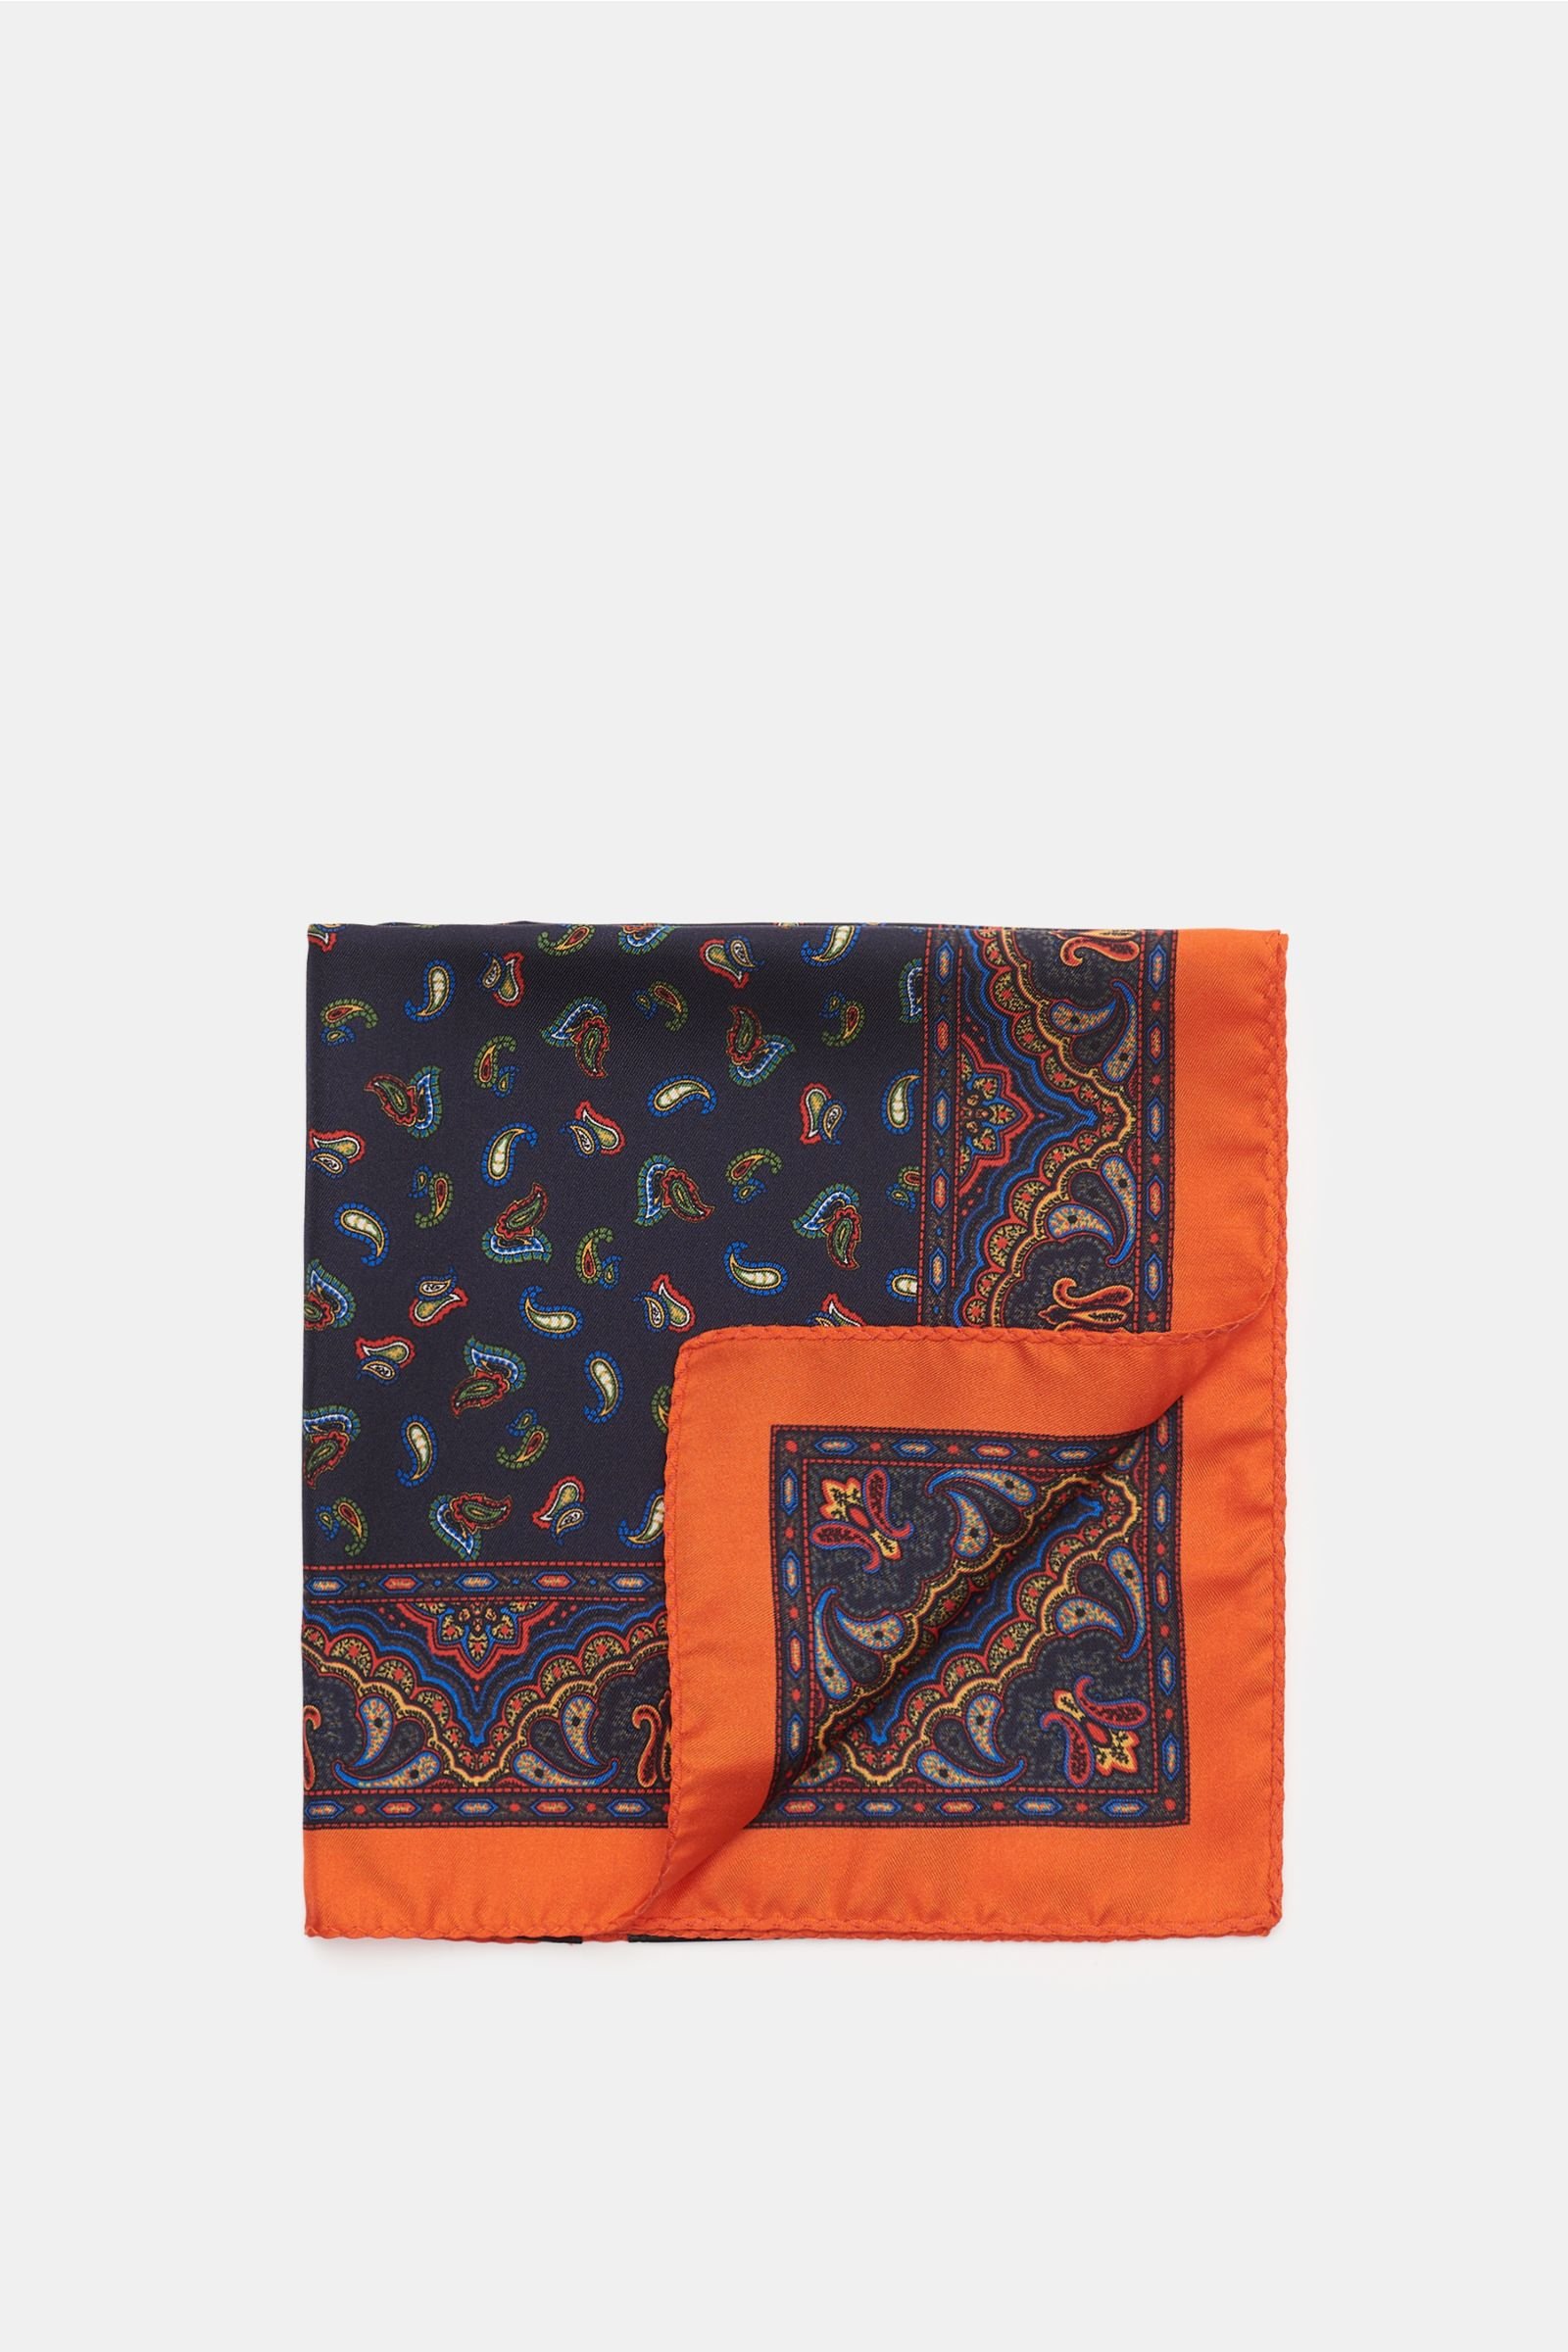 Pocket square navy/orange, patterned